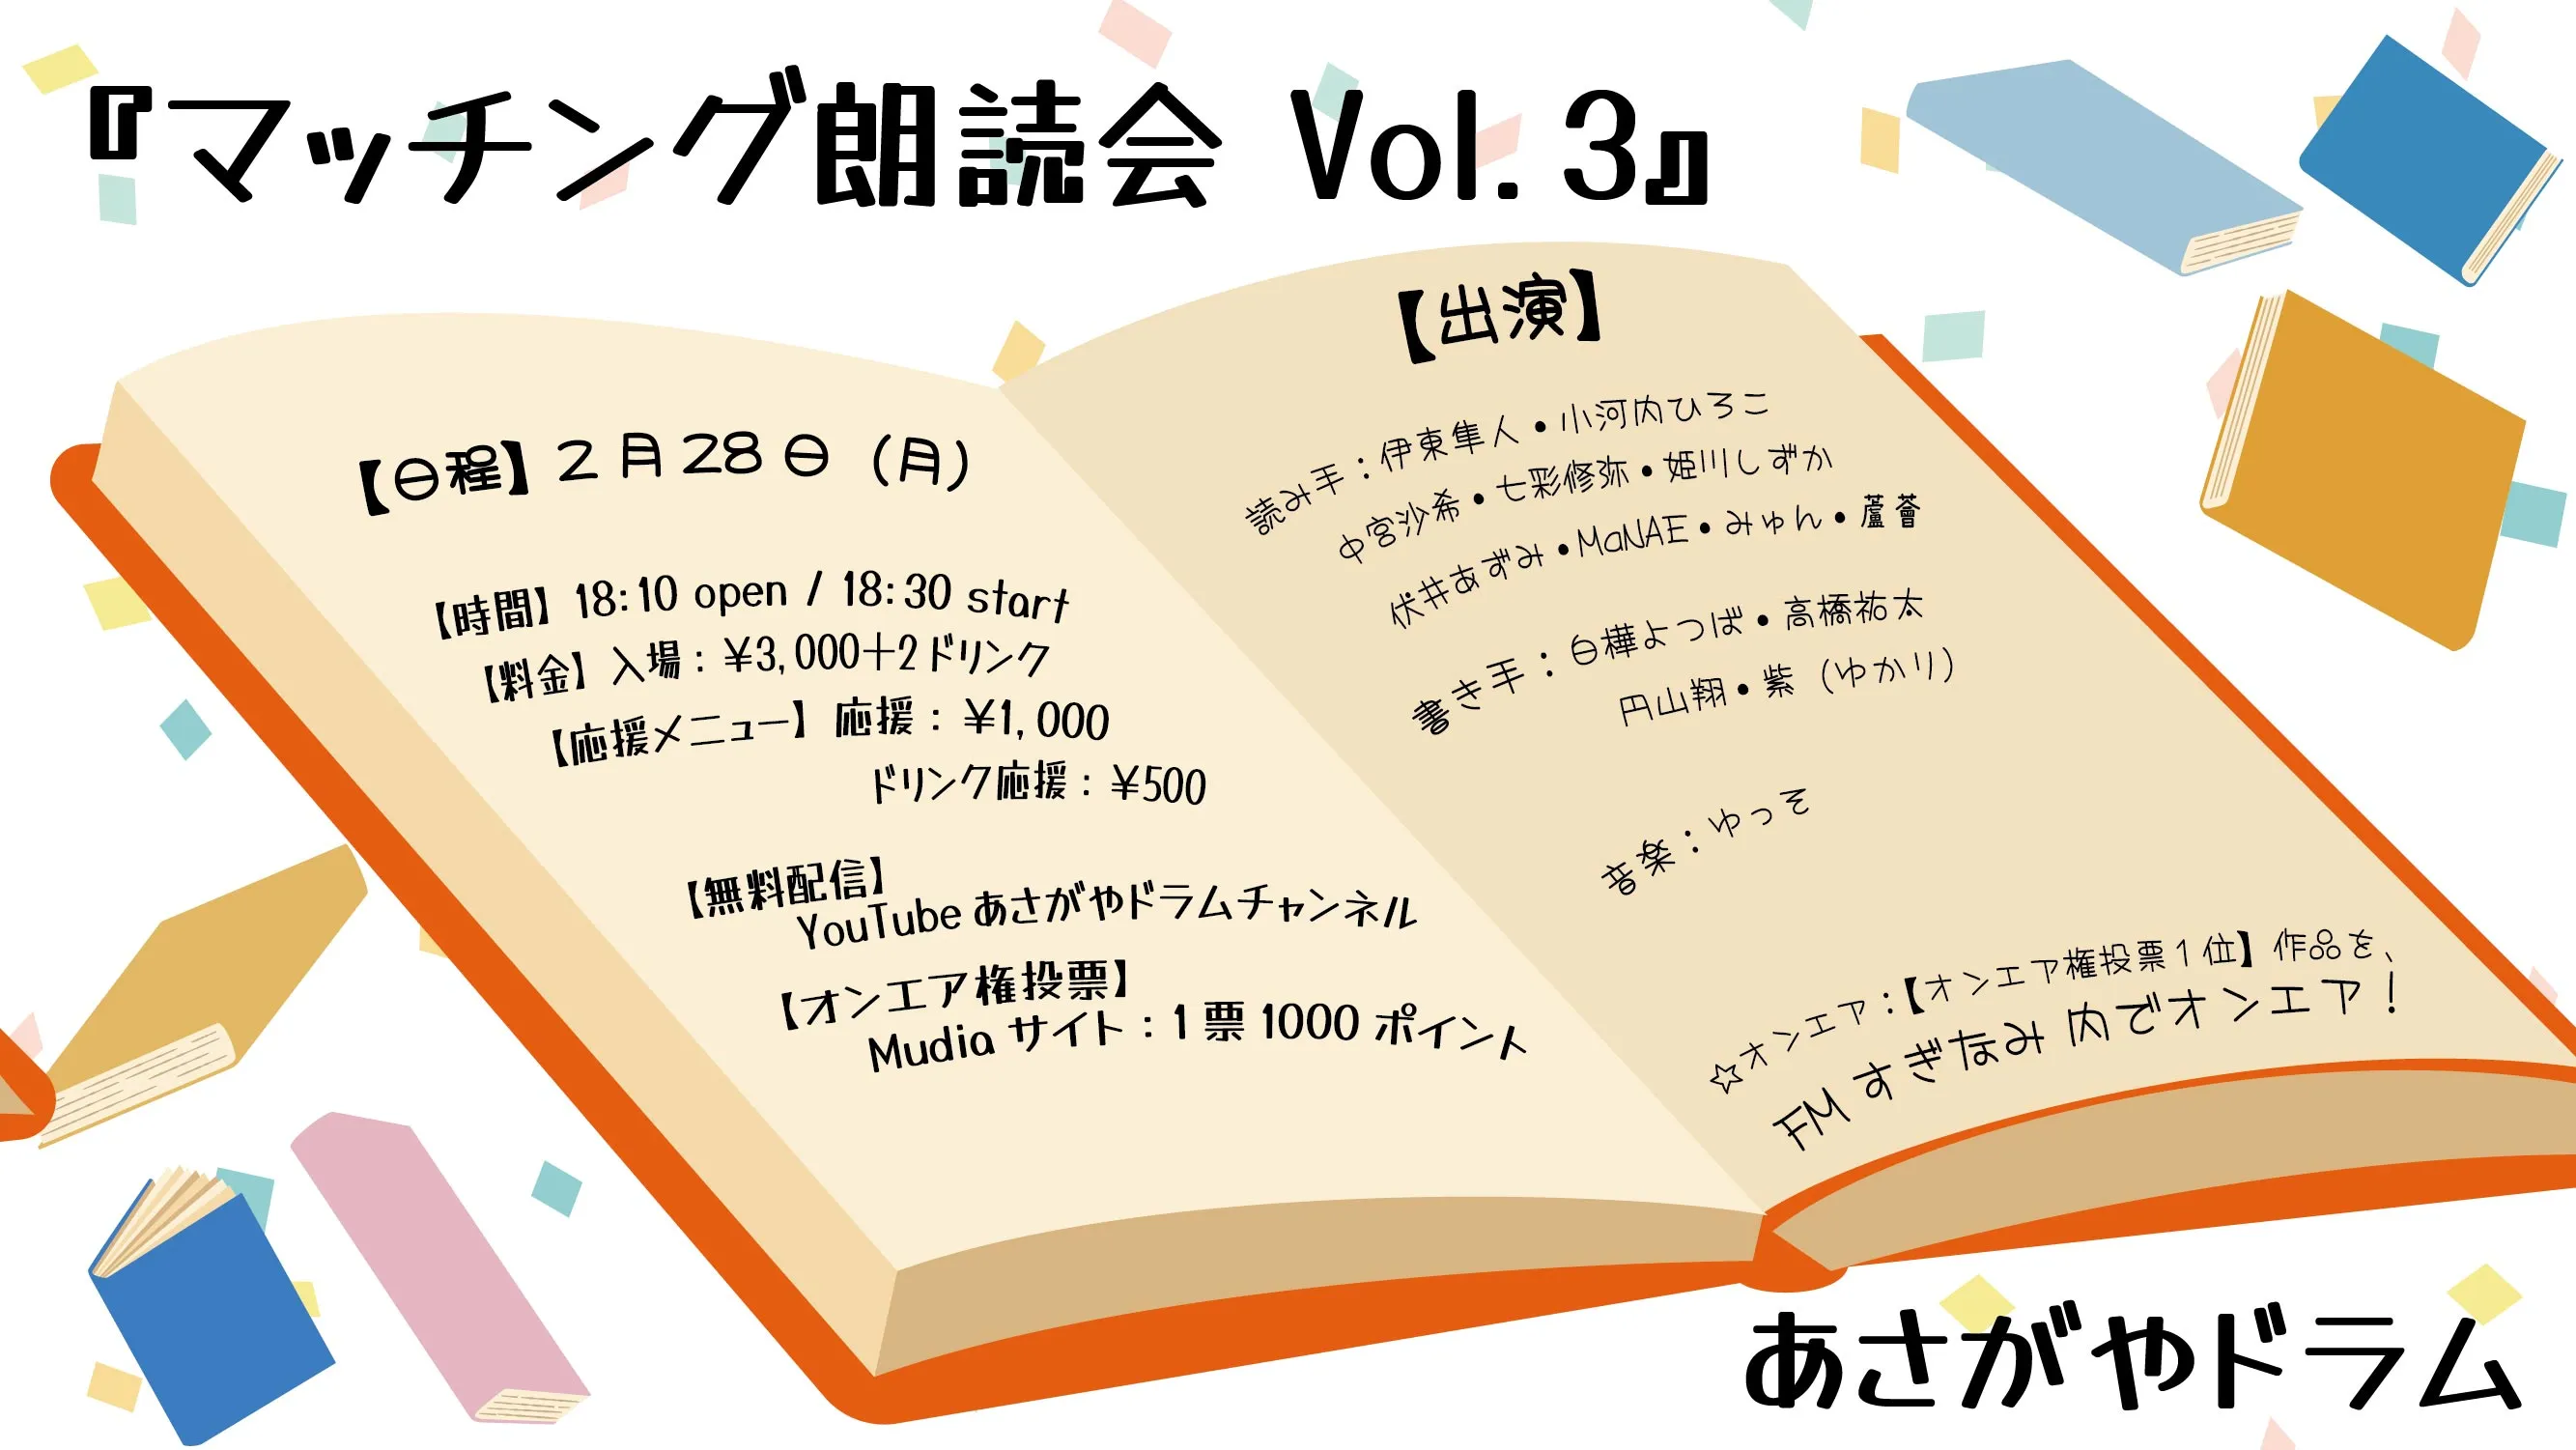 ライブ配信 0228『『マッチング朗読会 Vol.3』』